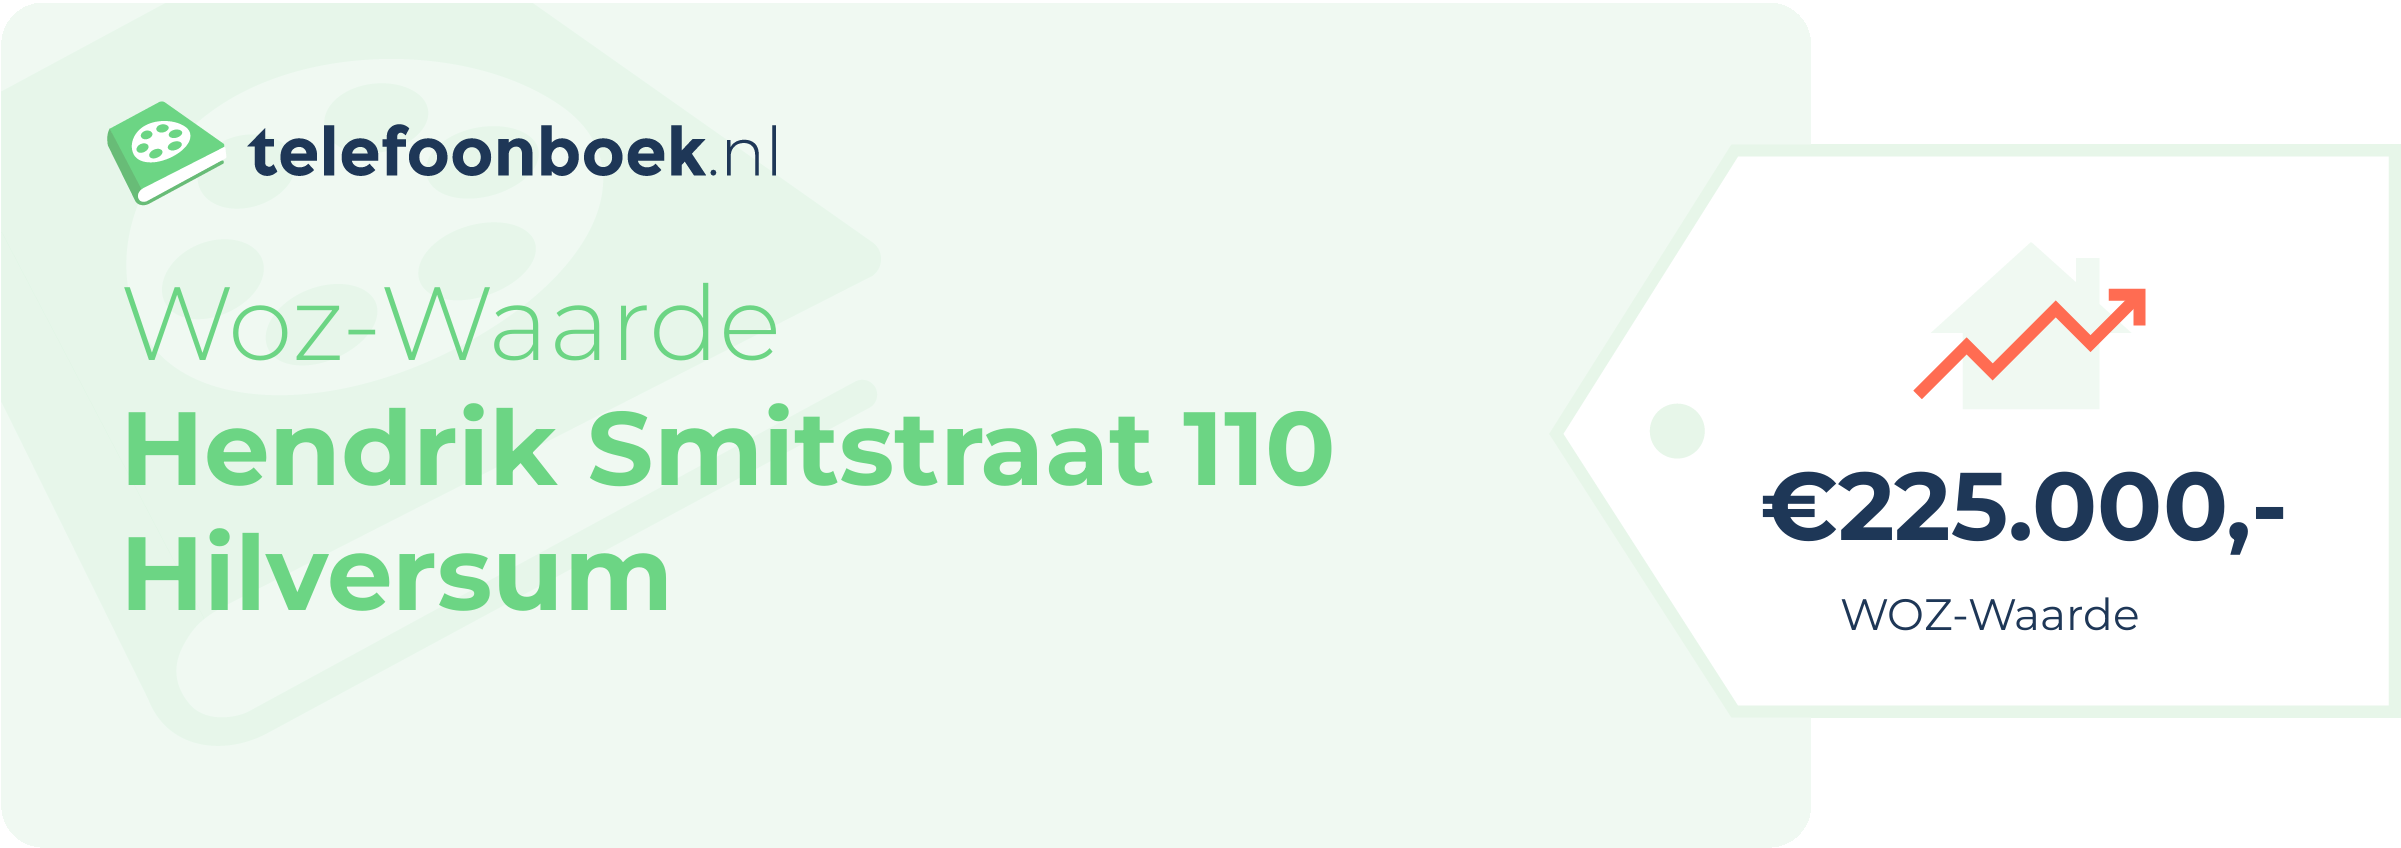 WOZ-waarde Hendrik Smitstraat 110 Hilversum